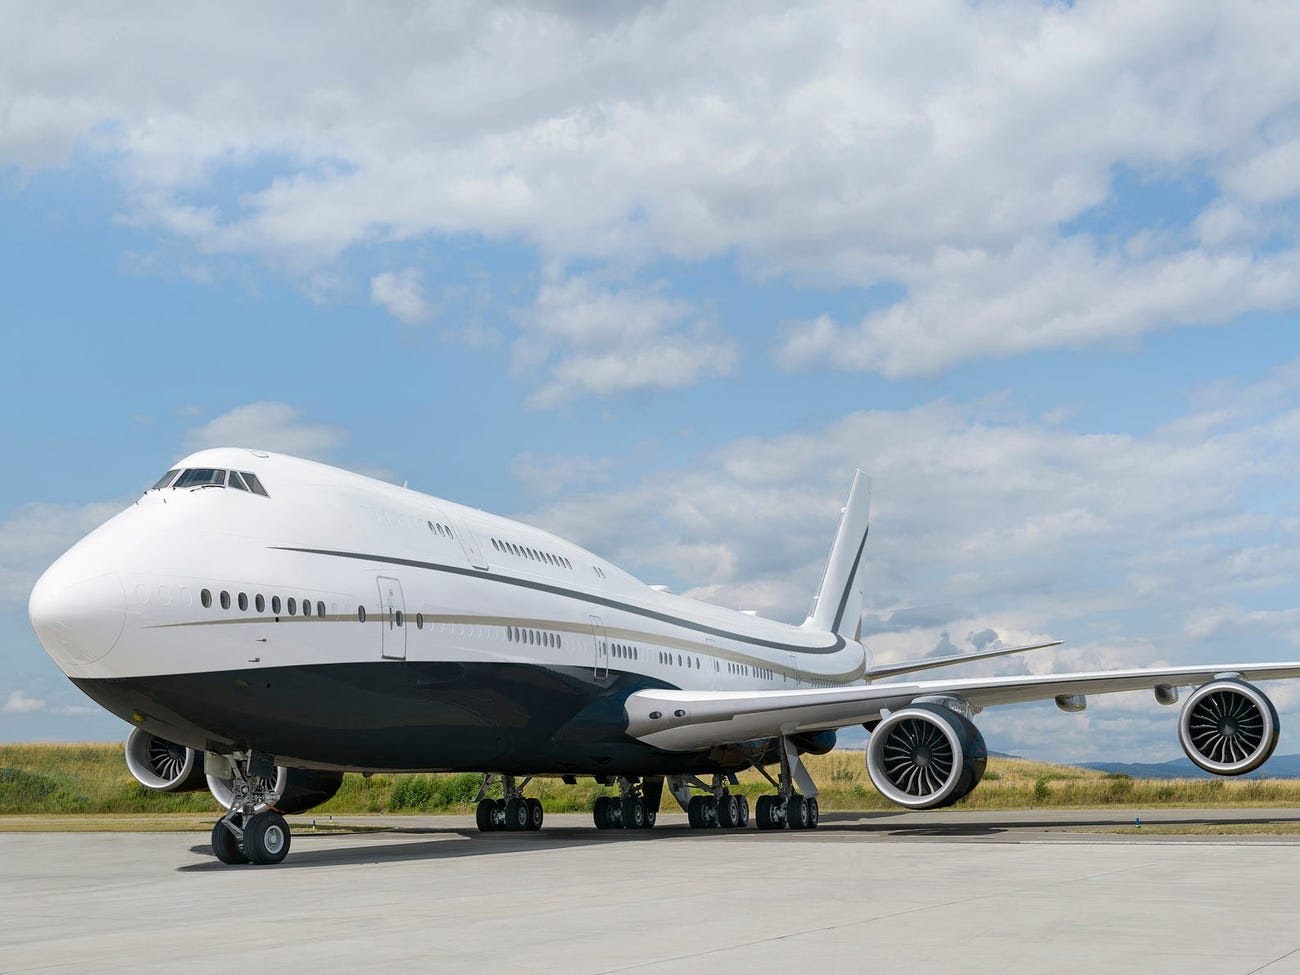 Máy bay 747-8i dài hơn 250 feet (khoảng 76m) từ mũi đến đuôi và có hai tầng, với sức chứa hơn 400 hành khách